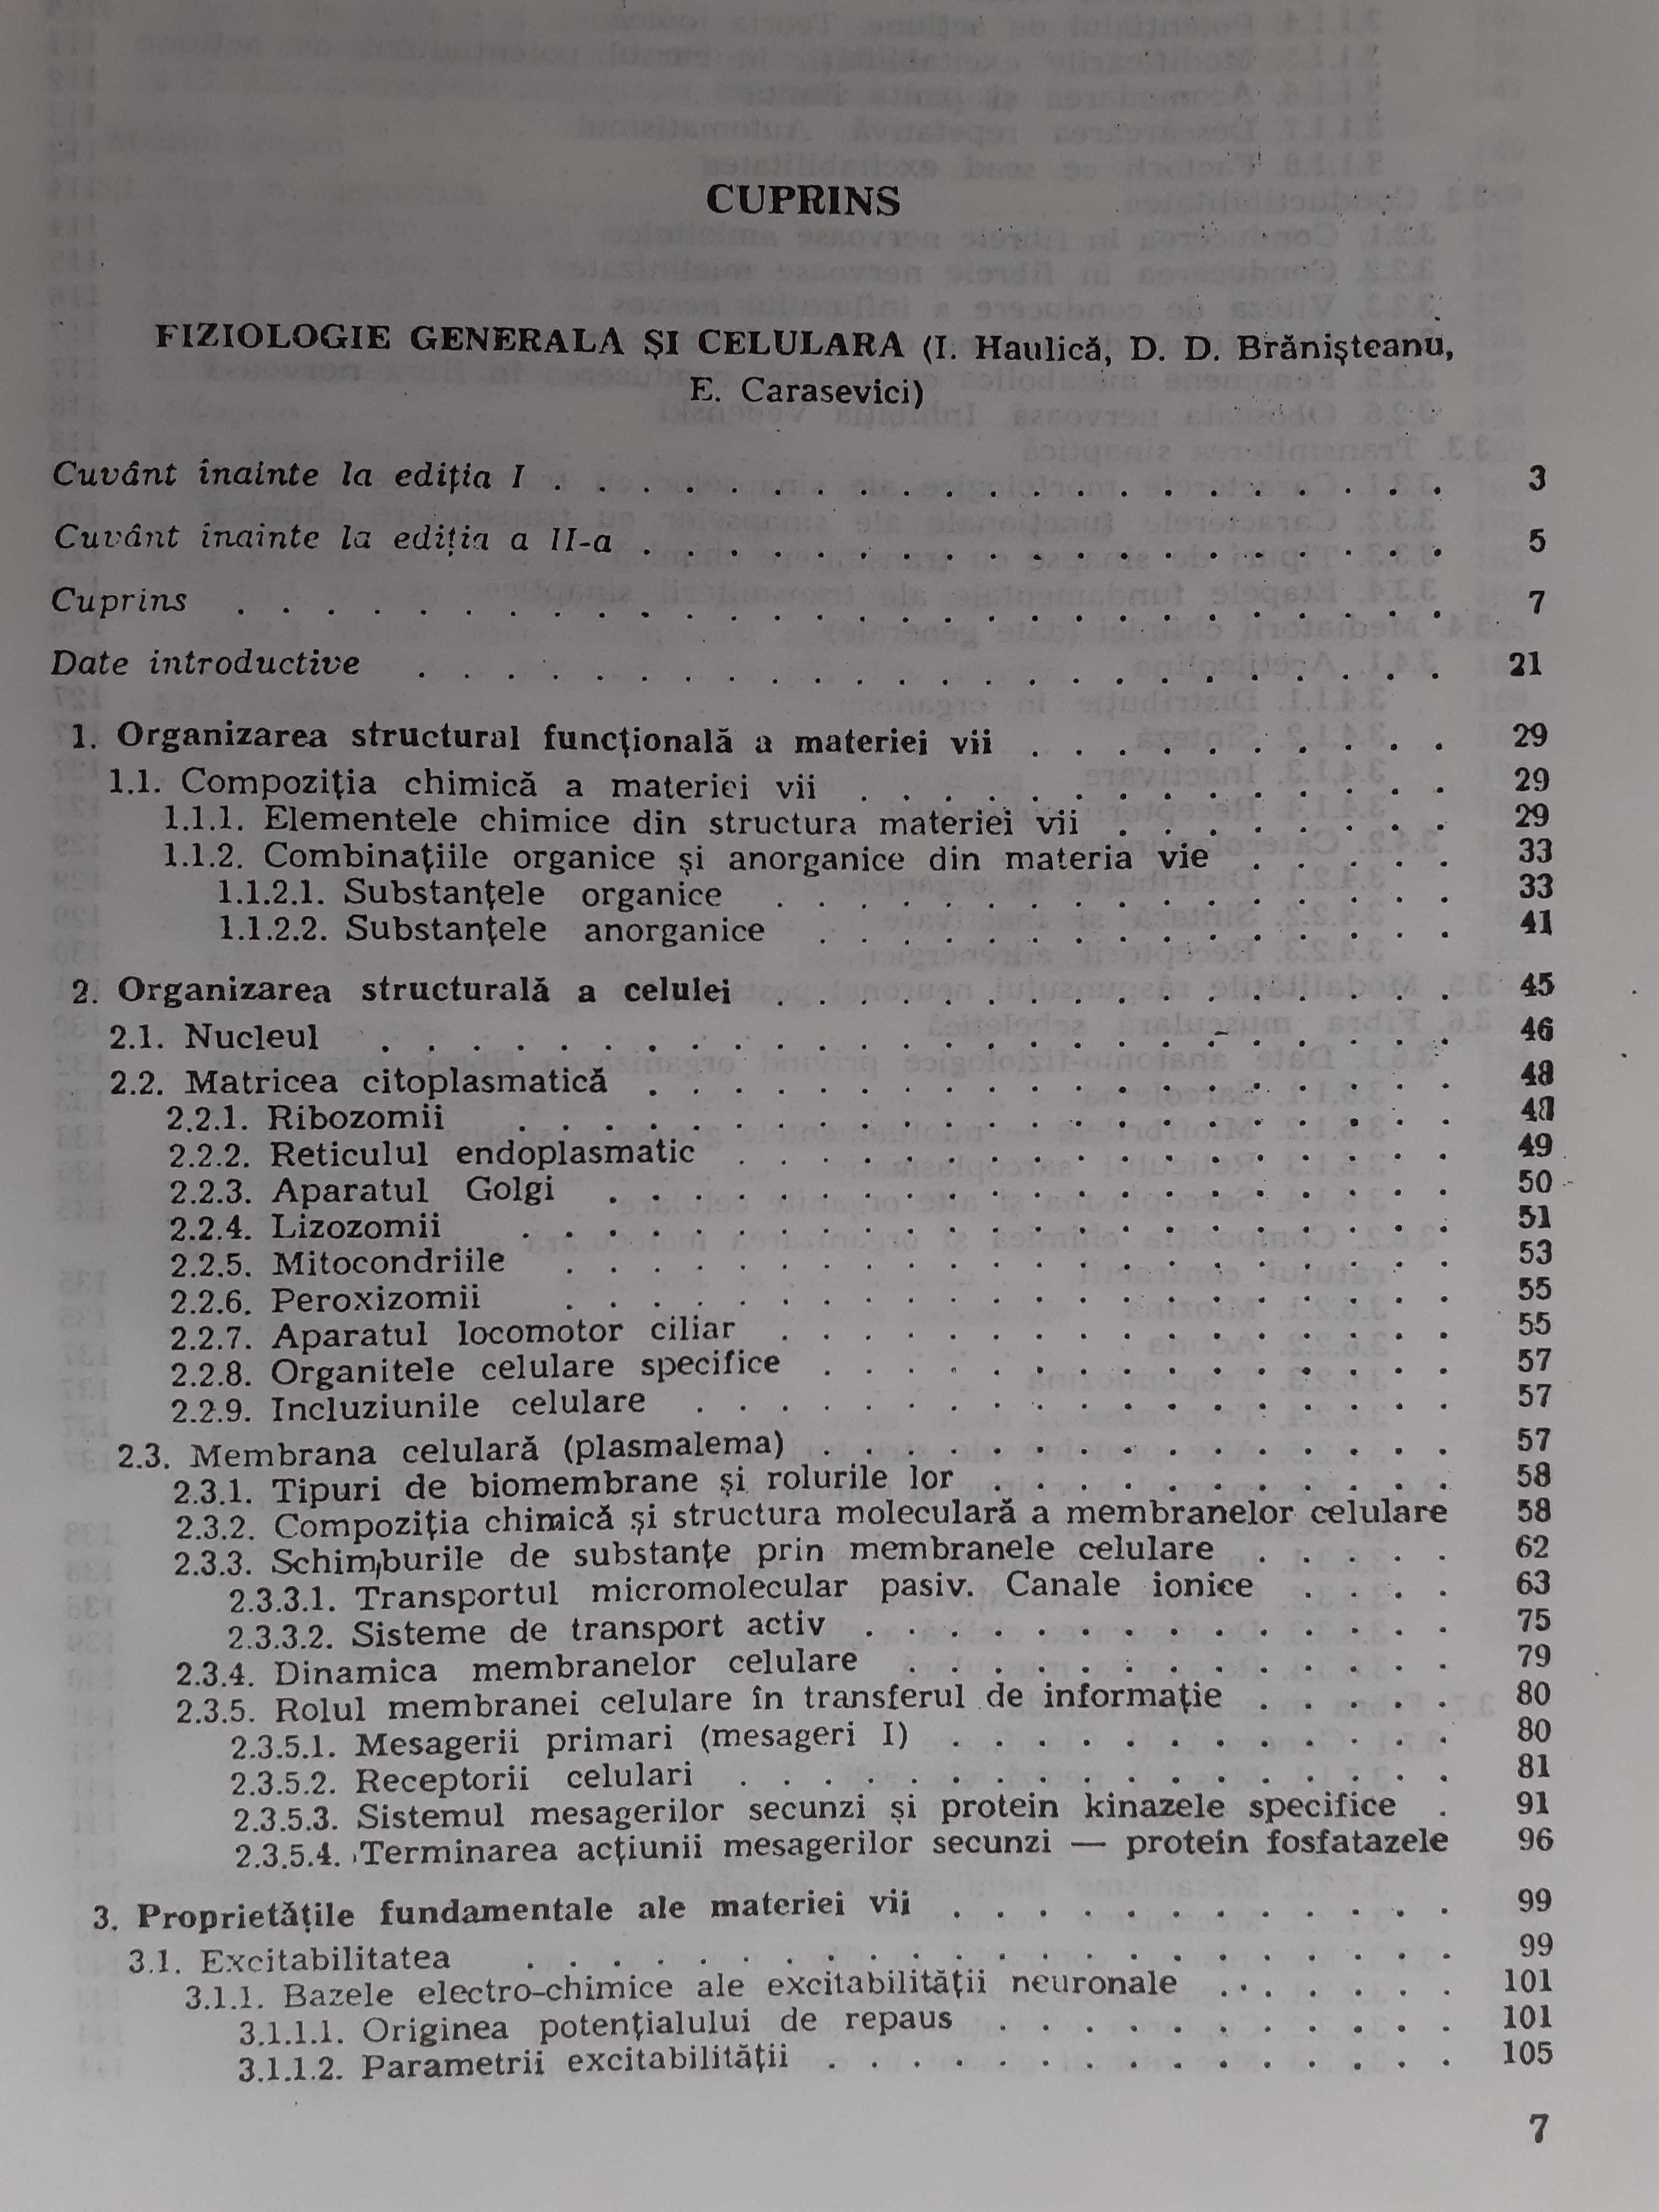 Fiziologie Umana de I. Haulica, editie a II-a.